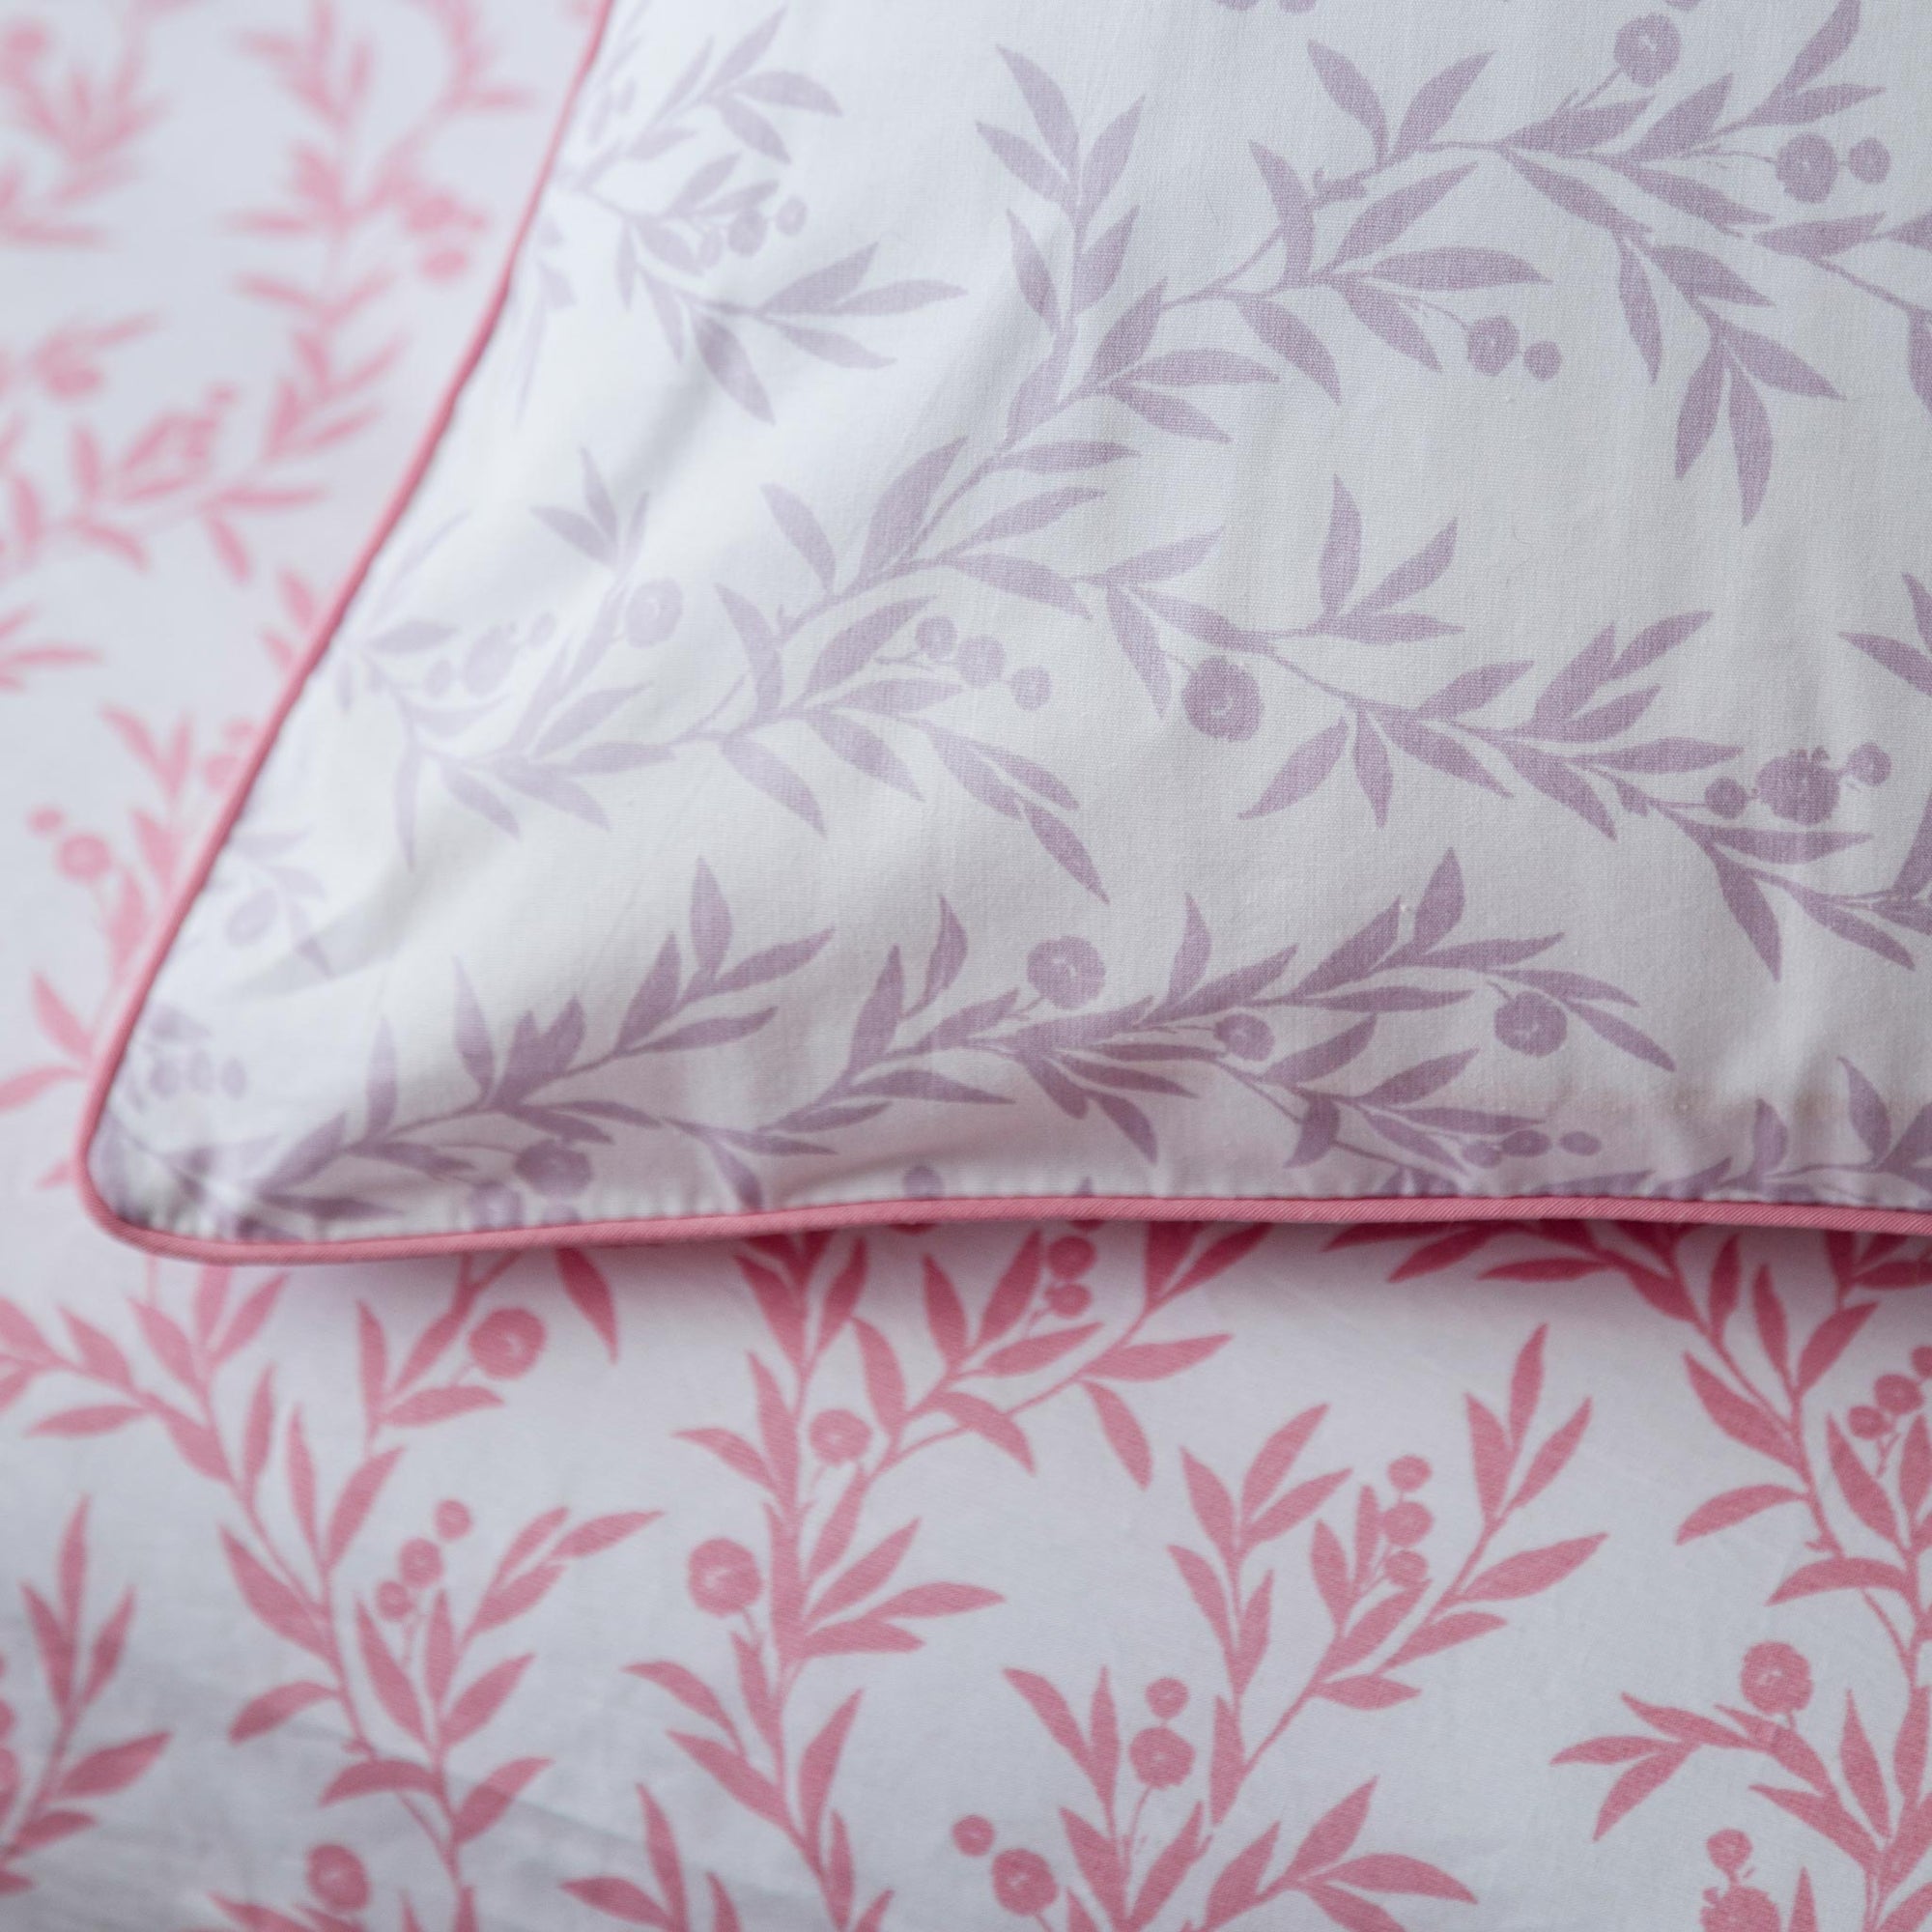 Parure de lit en pure percale - Ensemble de housse de couette à petites fleurs lilas et roses